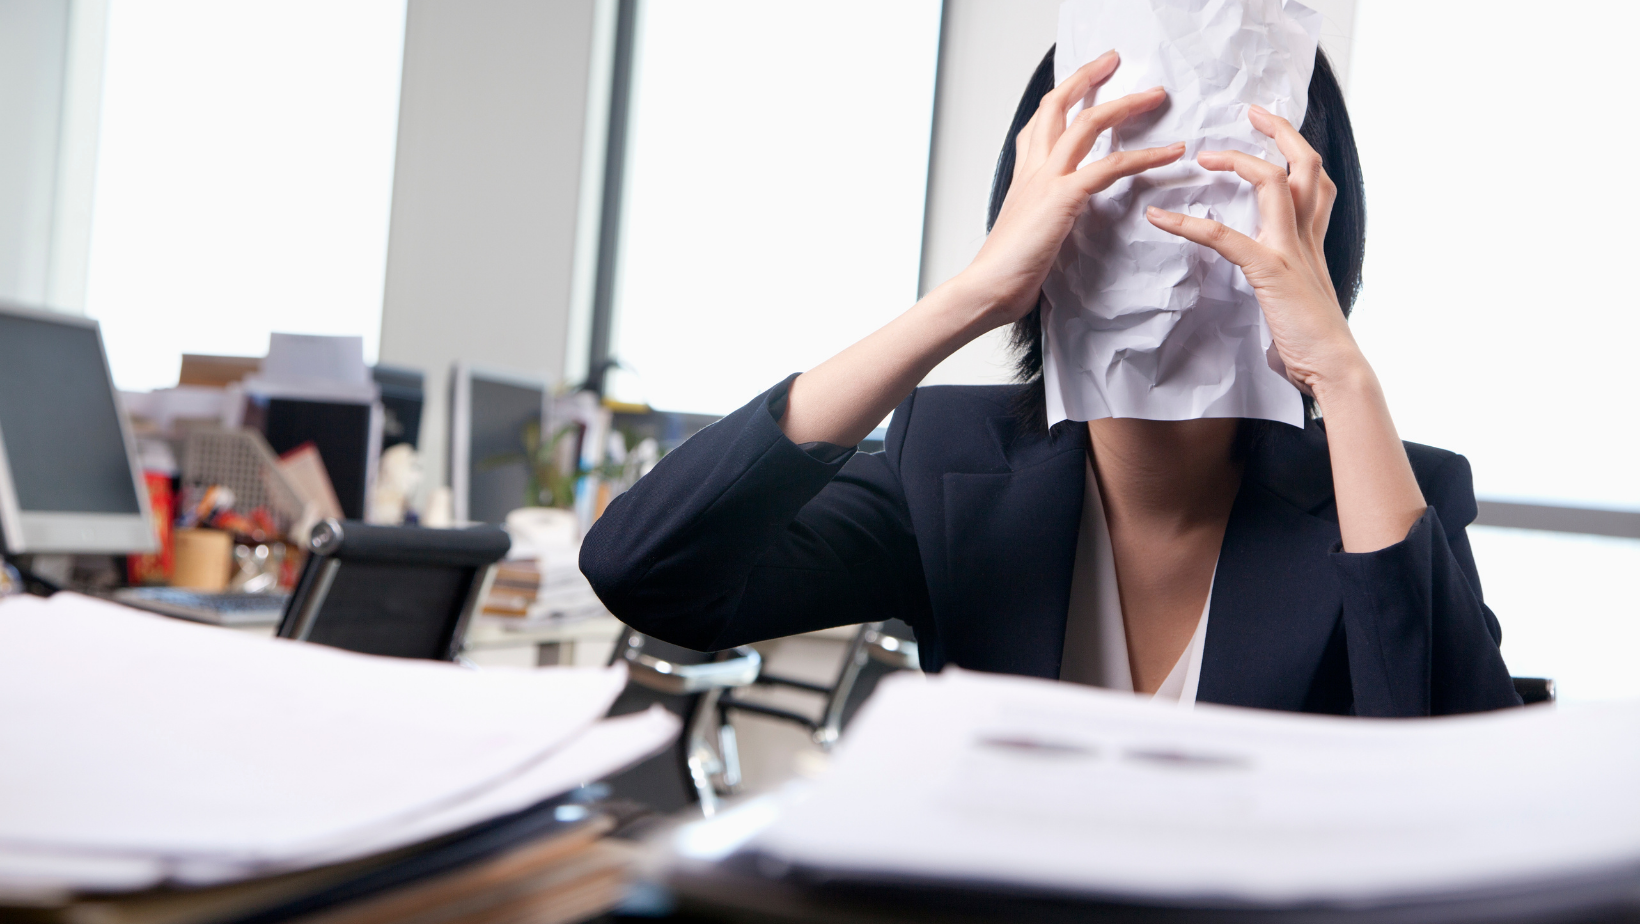 אישה מחזיקה דף נייר על הפנים במשרד